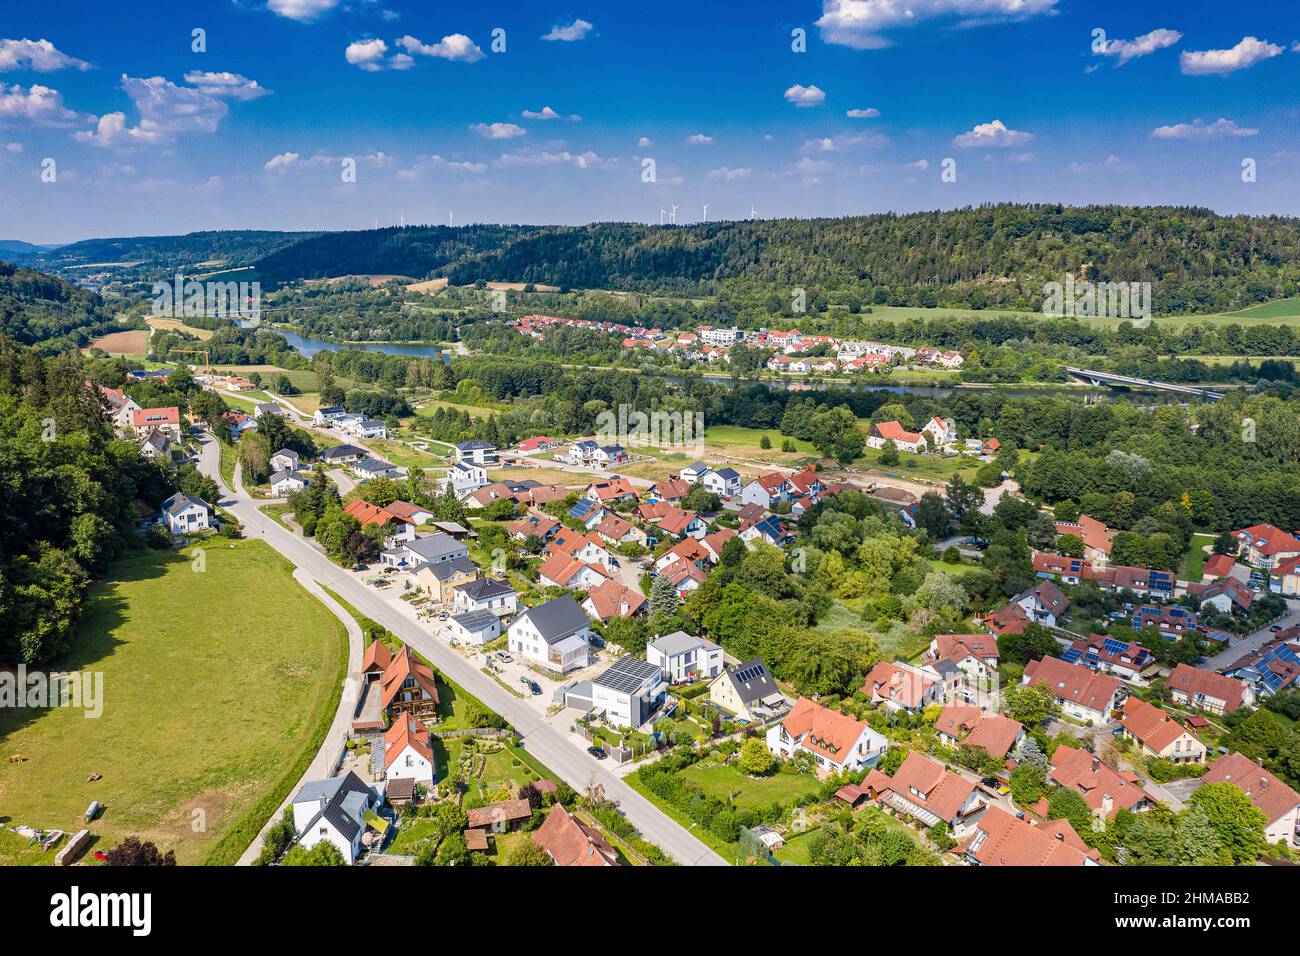 Luftbild Beilngries im Naturpark Altmühltal, Bayern, Deutschland an einem sonnigen Tag im Sommer mit Blick auf die Kanalsiedlung über Hirschberger Str Banque D'Images